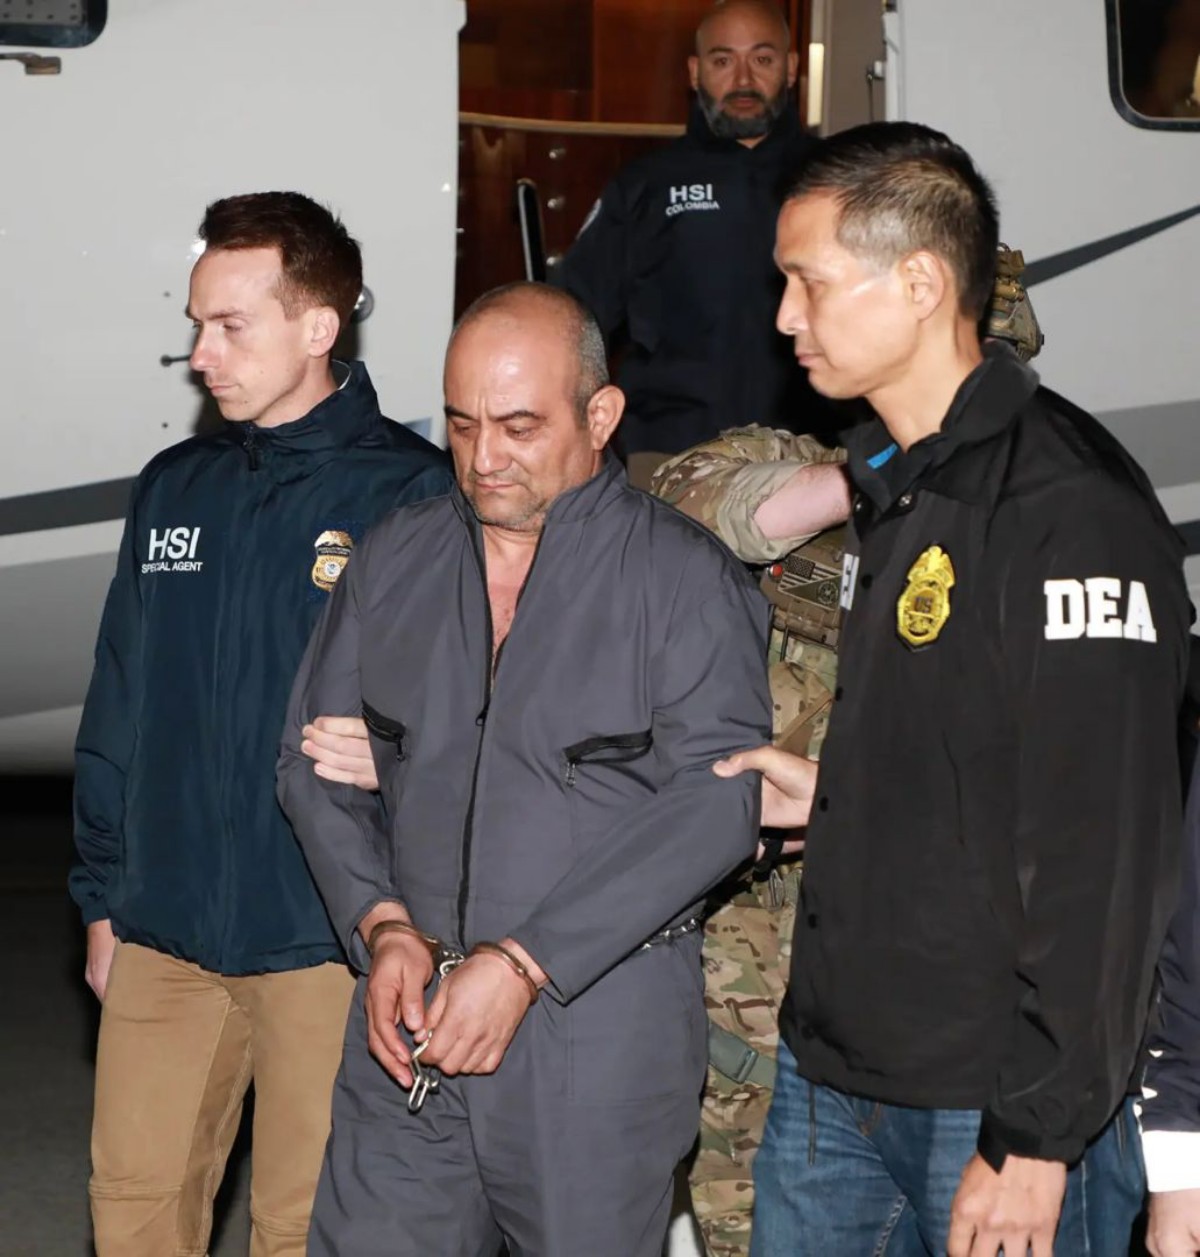 ‘Drug lord’ Dairo Antonio Úsuga David Extradited To The US For NYC Trial